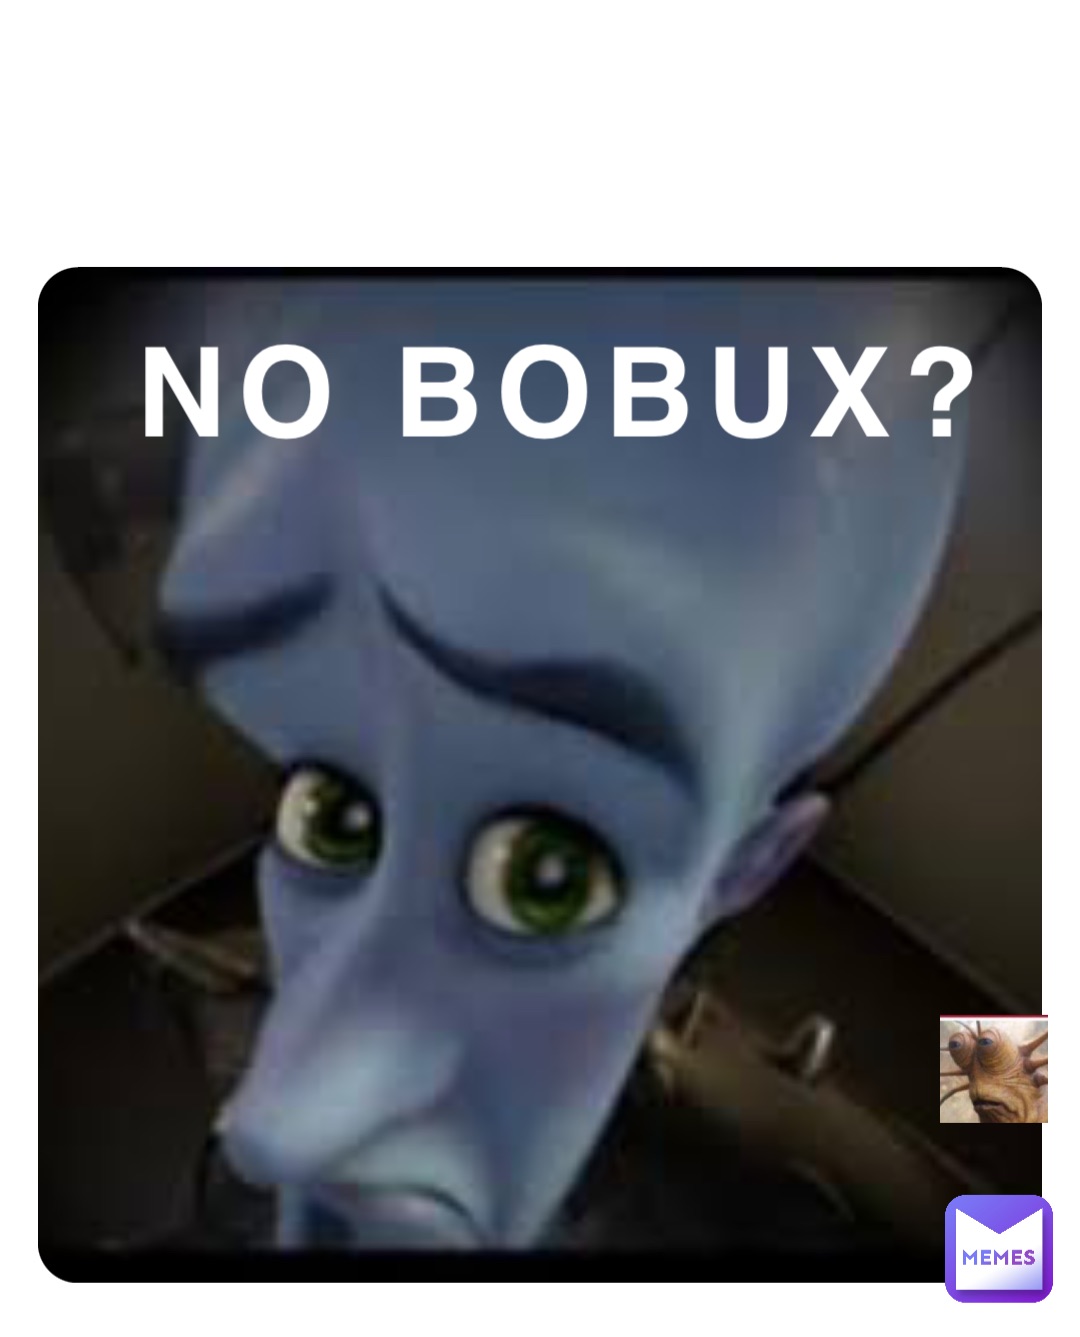 NO BOBUX?